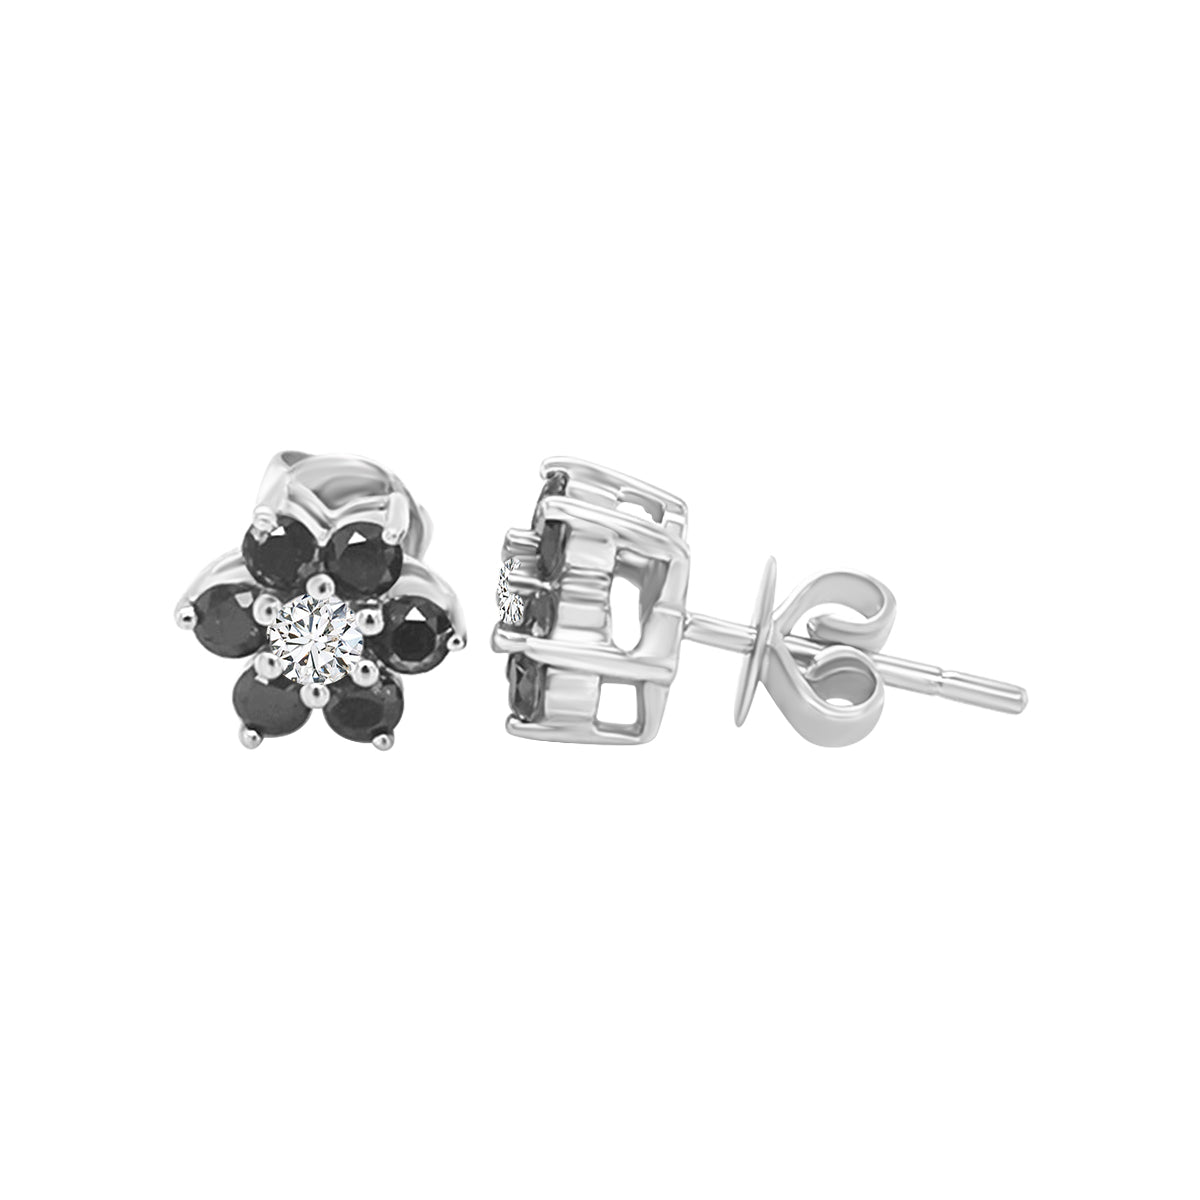 Floral Design Black Diamond Stud Earrings In 18k White Gold.